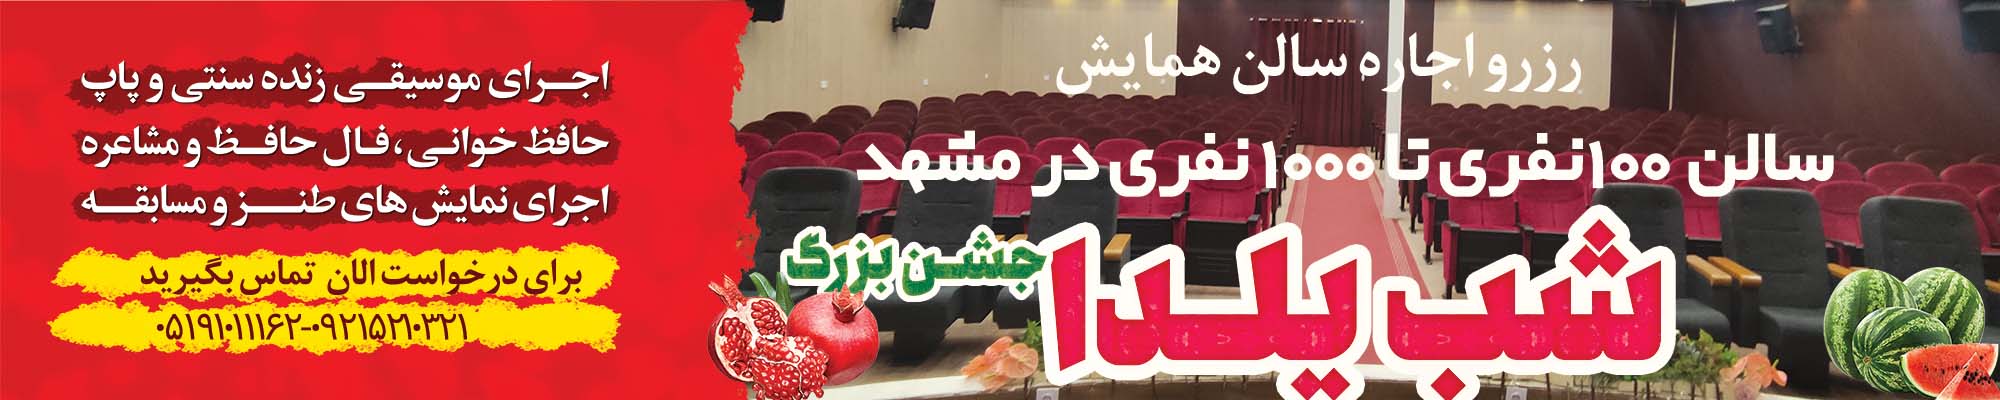 رزرو اجاره سالن همایش شب یلدا در مشهد